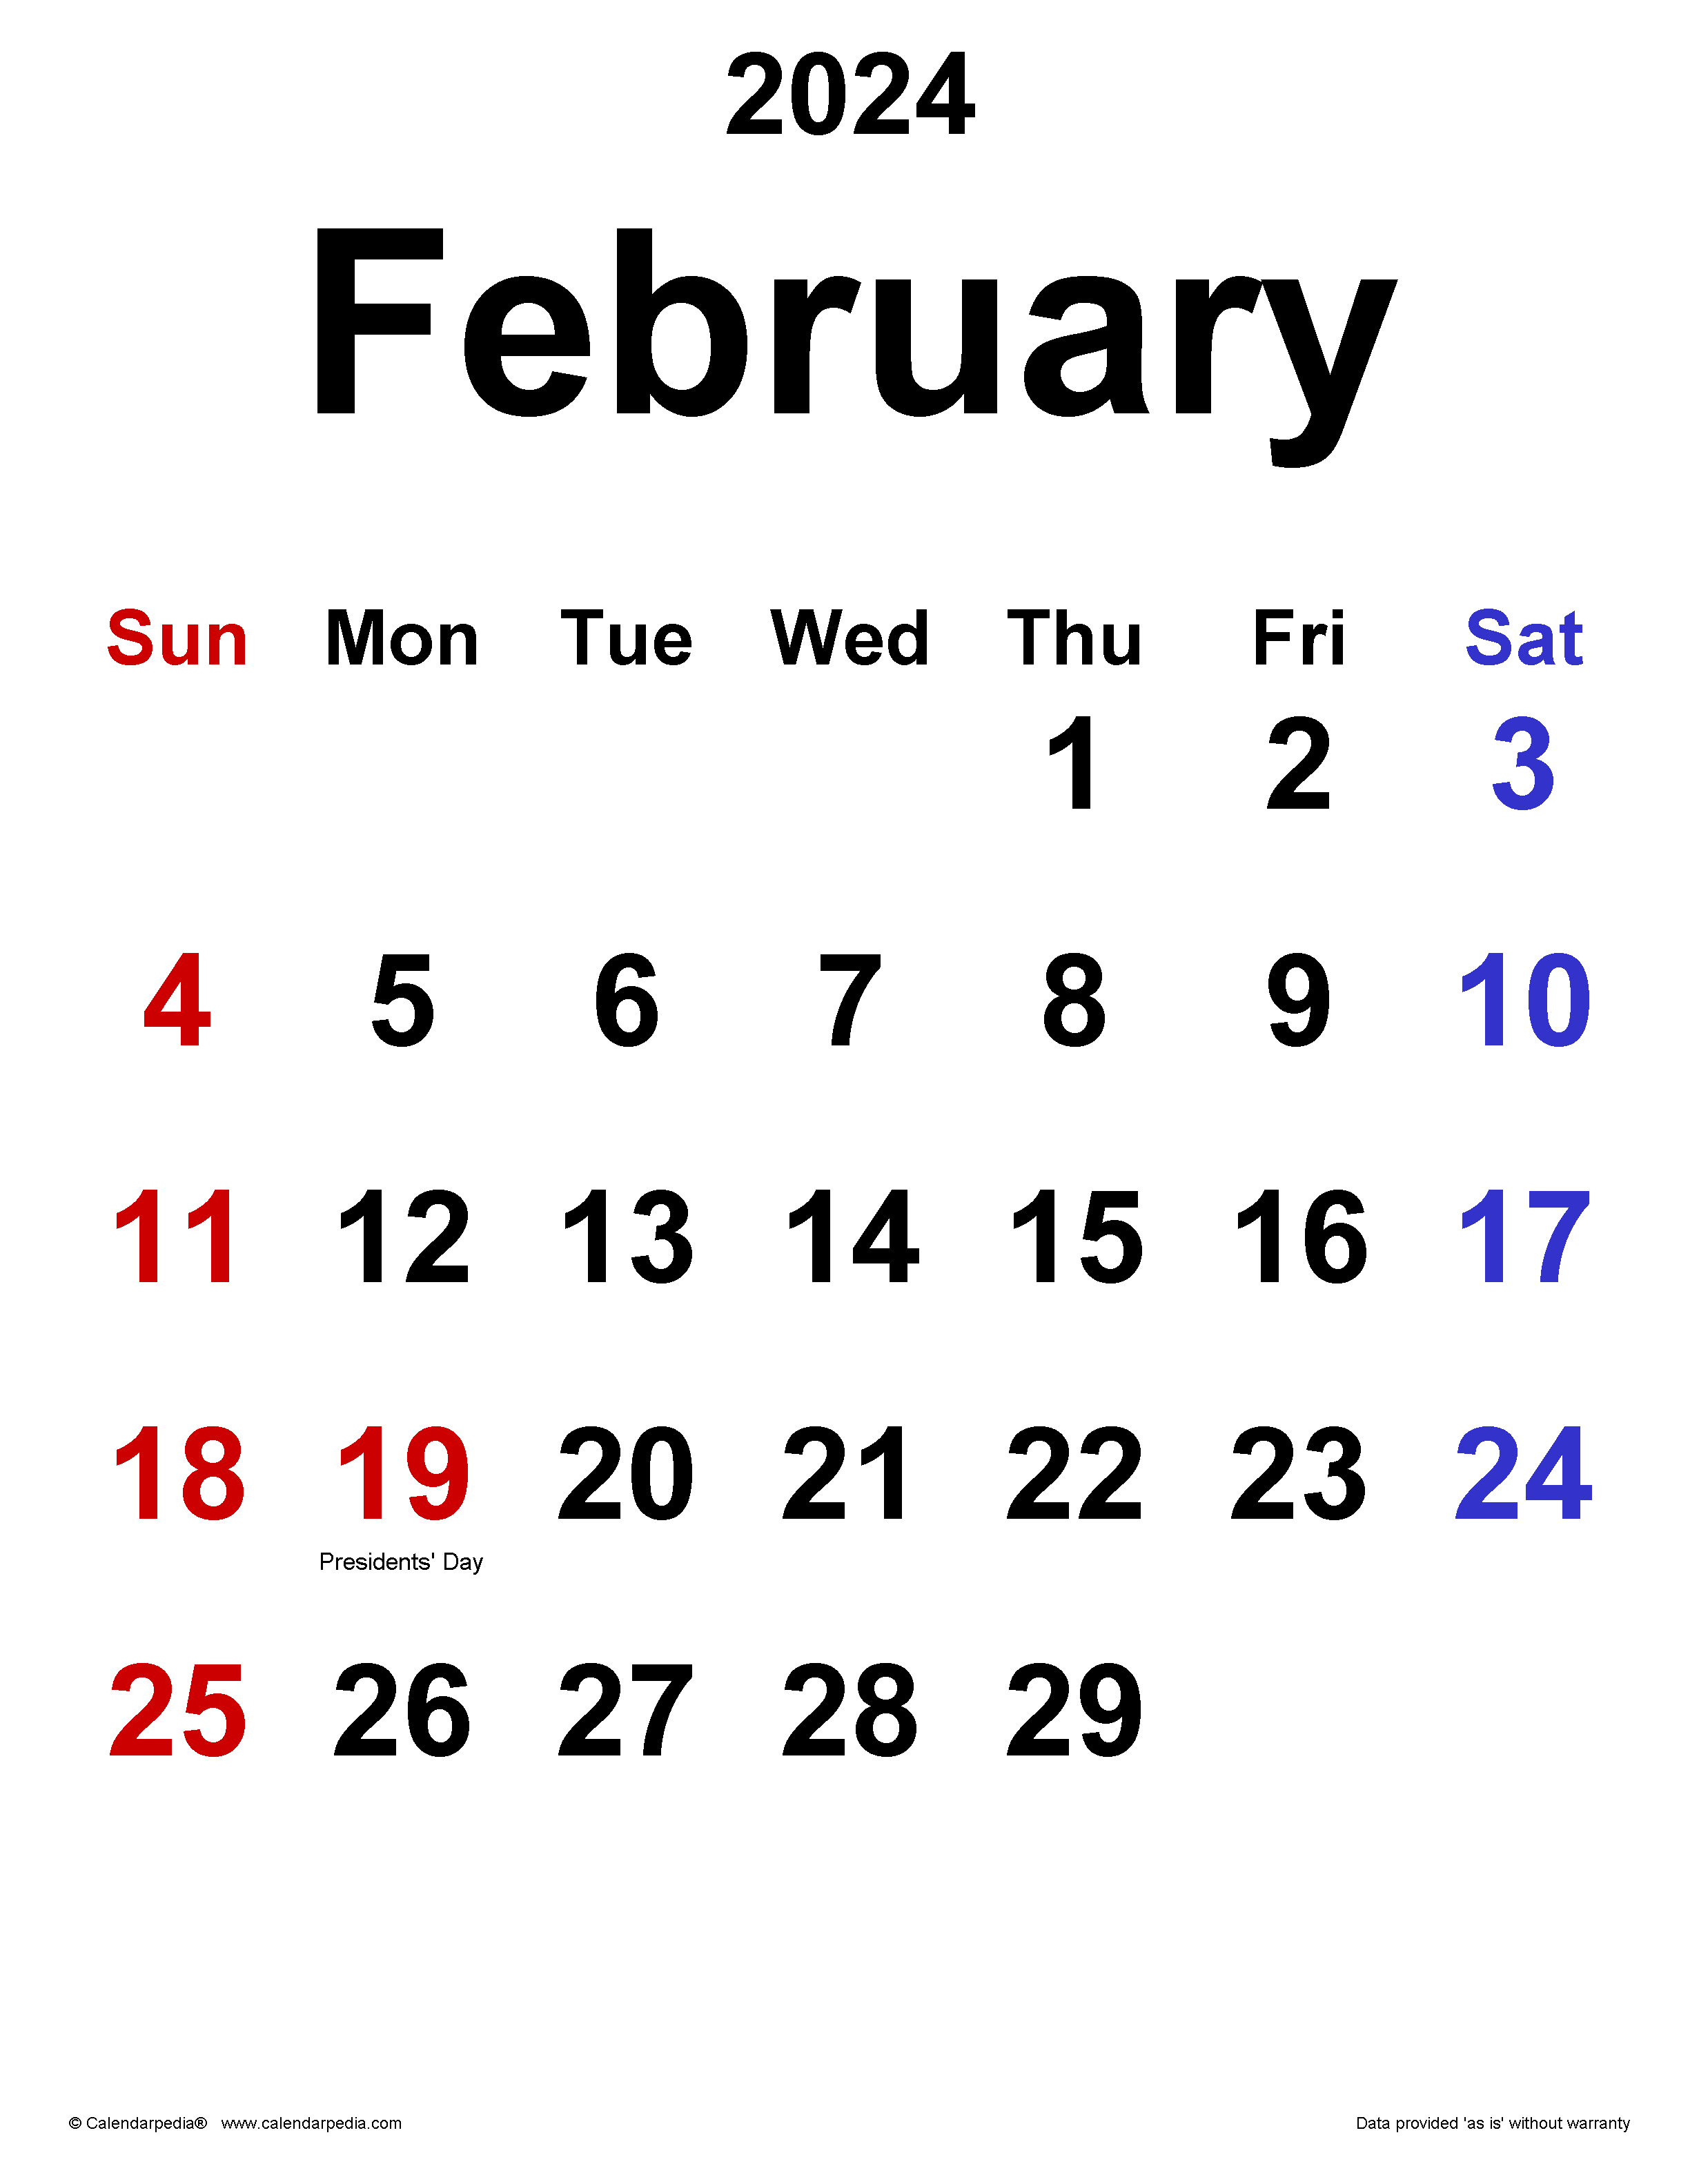 February 2024 Calendar - Free Printable A4 Calendar February 2024